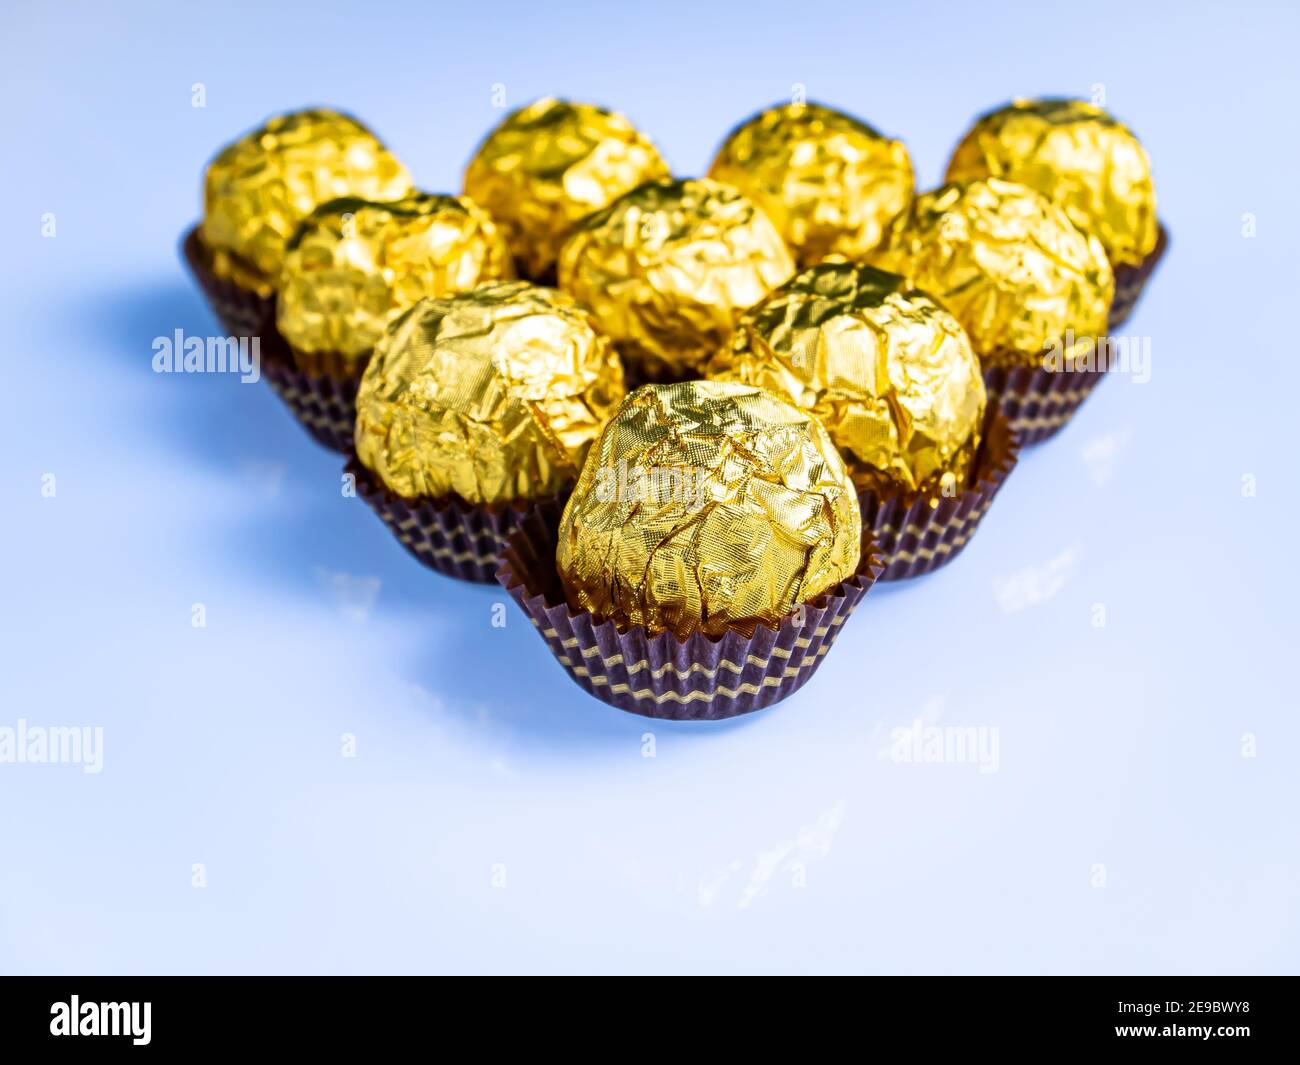 Runde Schokoladen-Bonbons in goldener Folienverpackung auf weißem  Hintergrund. Süßer Kuchen. Goldene Verpackung. Glänzende Folie.  Süßigkeitenverpackung. Süßes Dessert. Weiße Ba Stockfotografie - Alamy